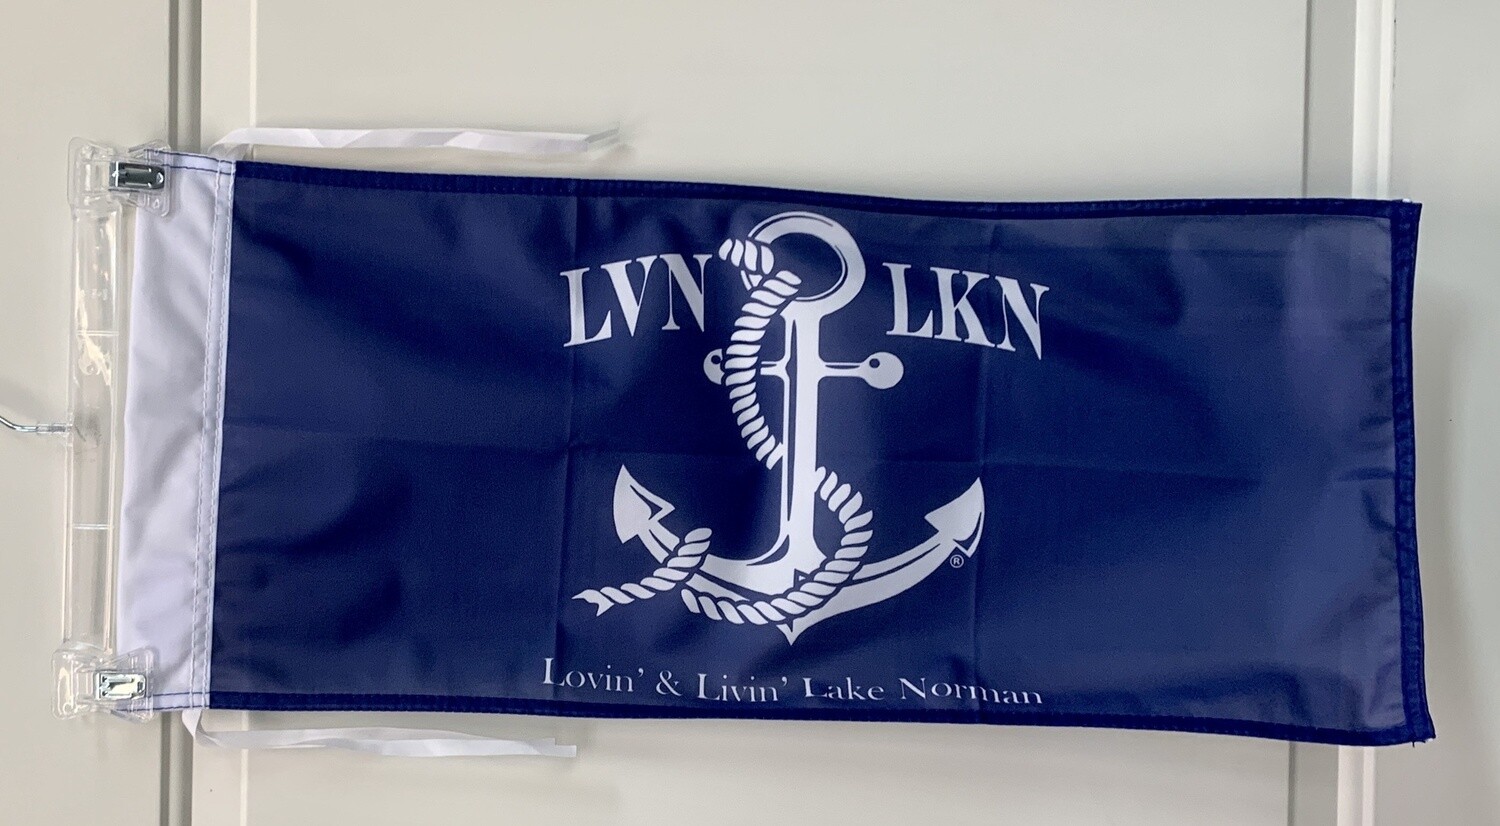 LVN LKN Boat Flags